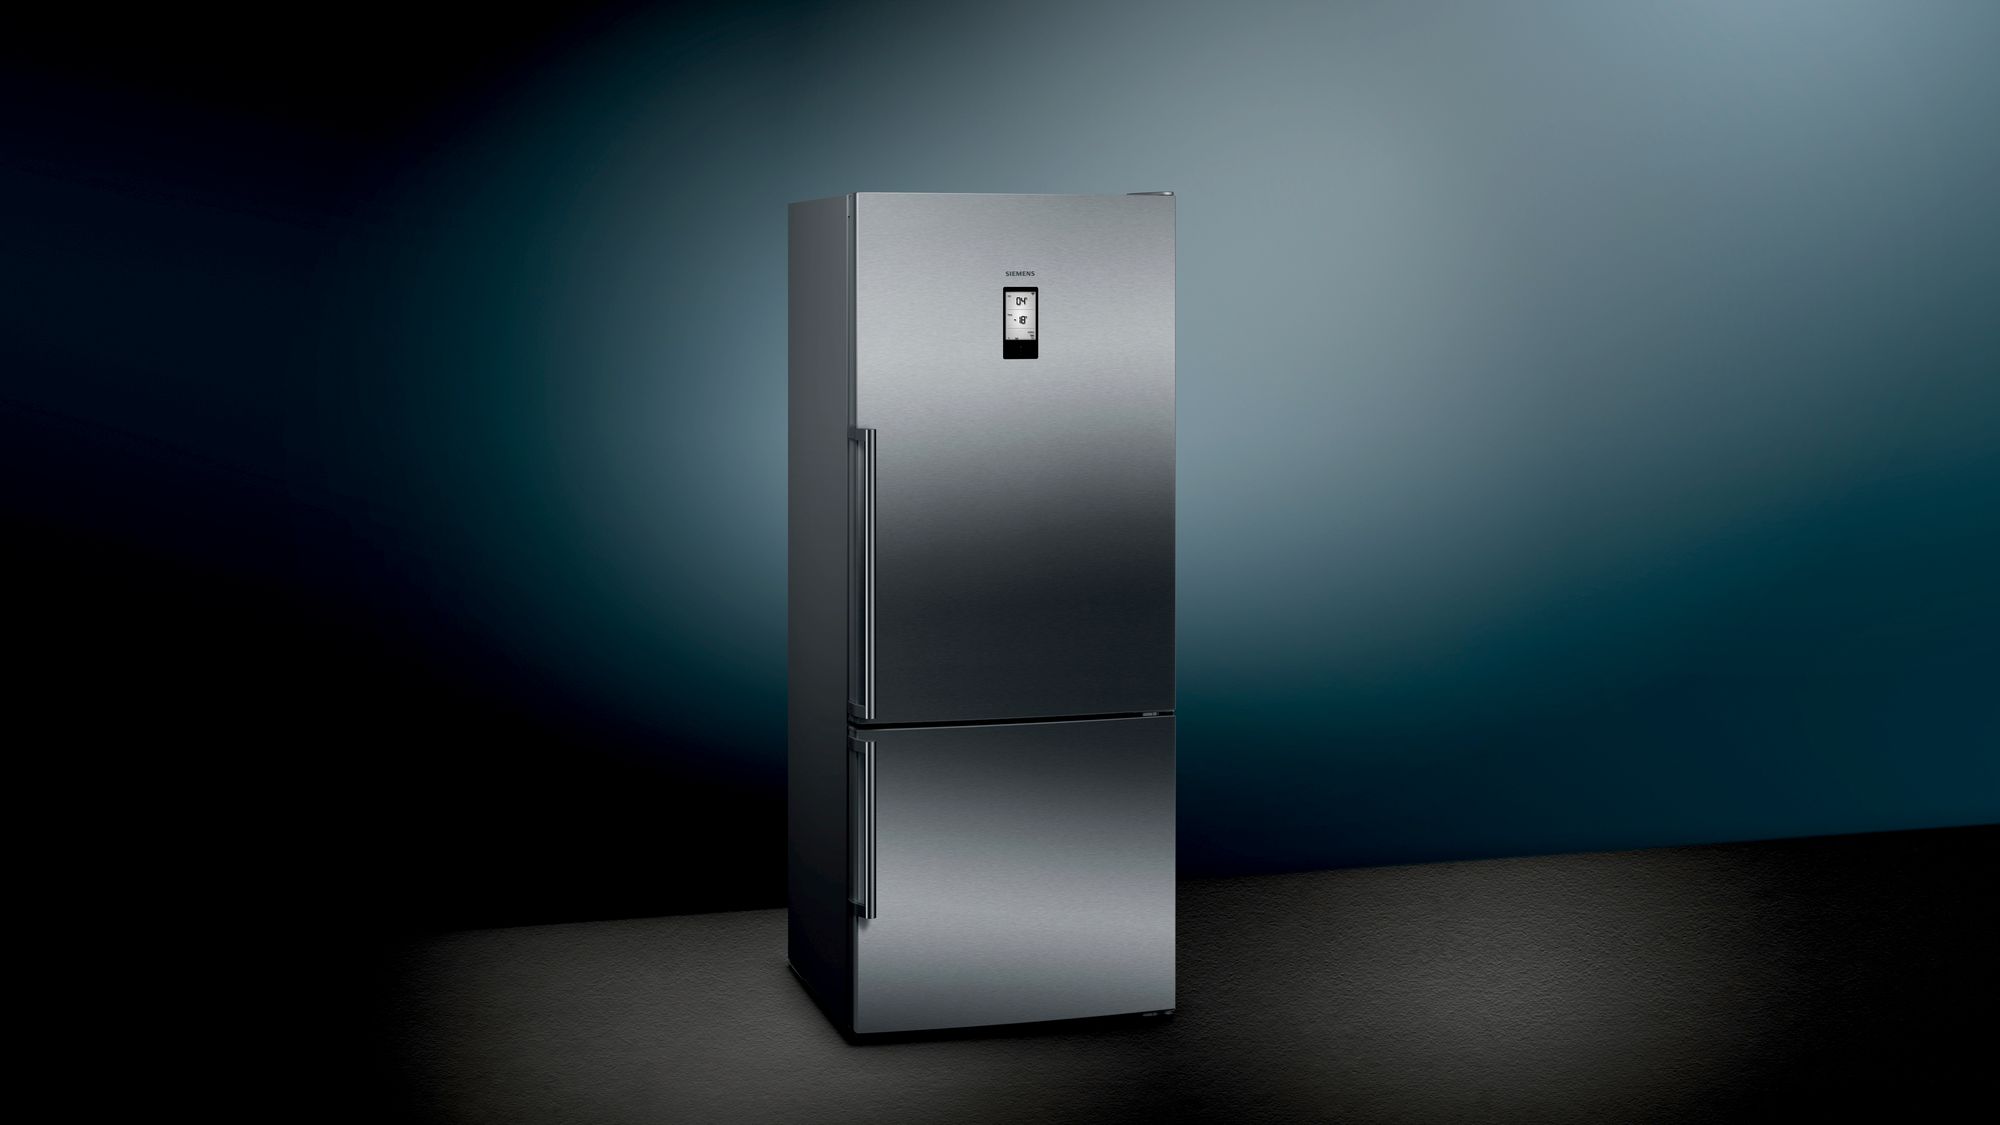 iQ500 Alttan Donduruculu Buzdolabı 75 cm, Kolay temizlenebilir Inox